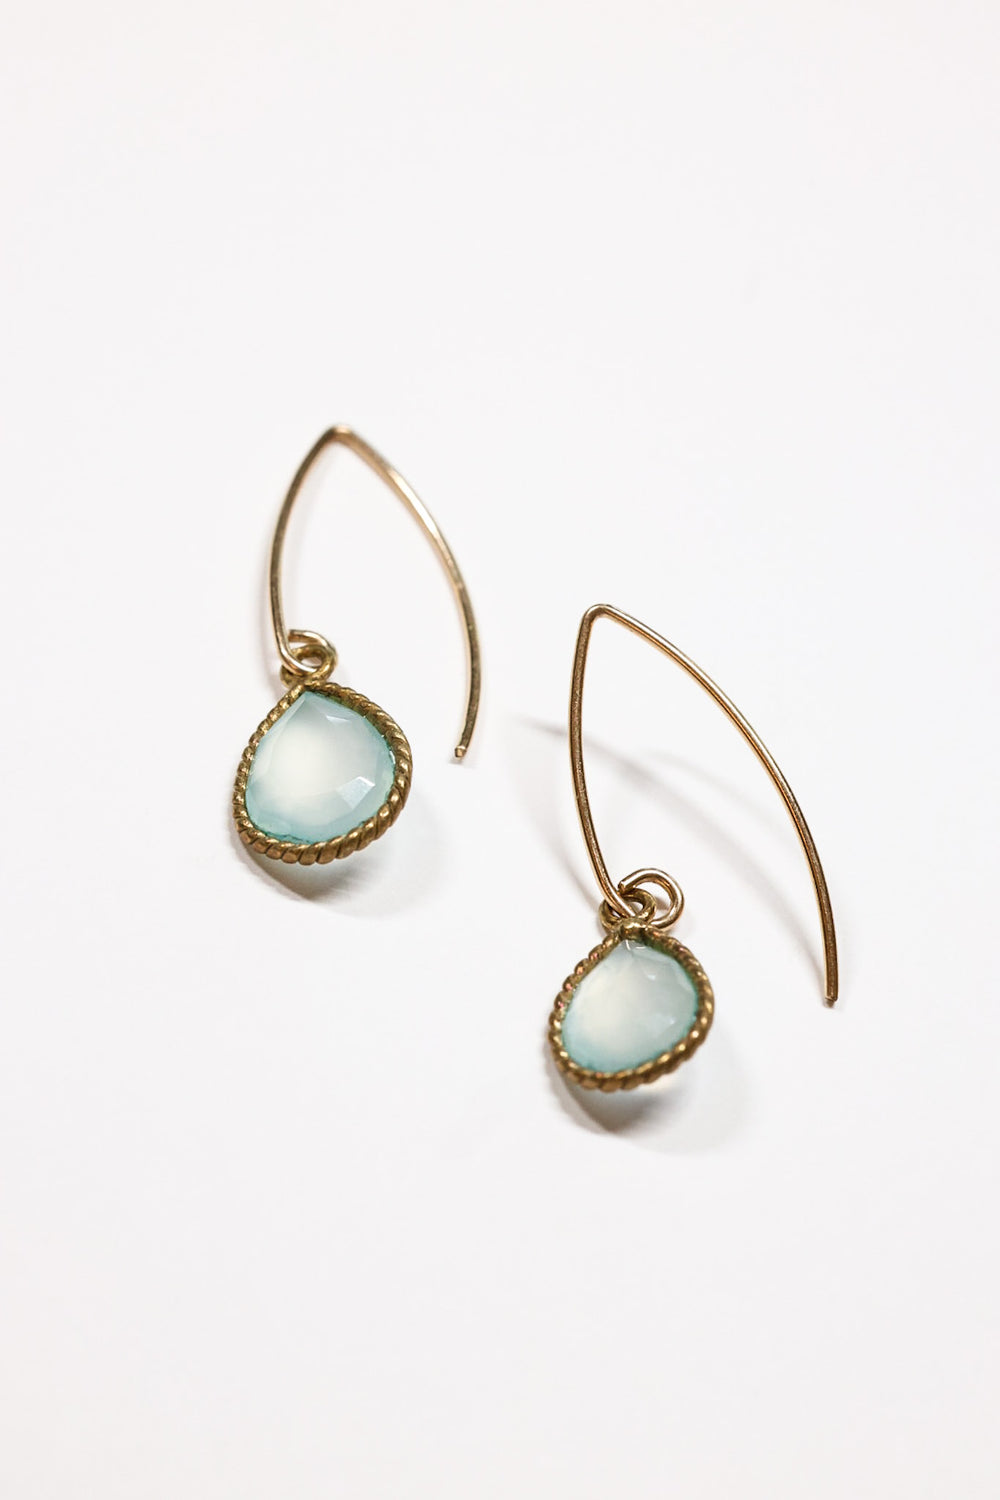 Emilia Teardrop earrings gold filled with twisted bezel. 